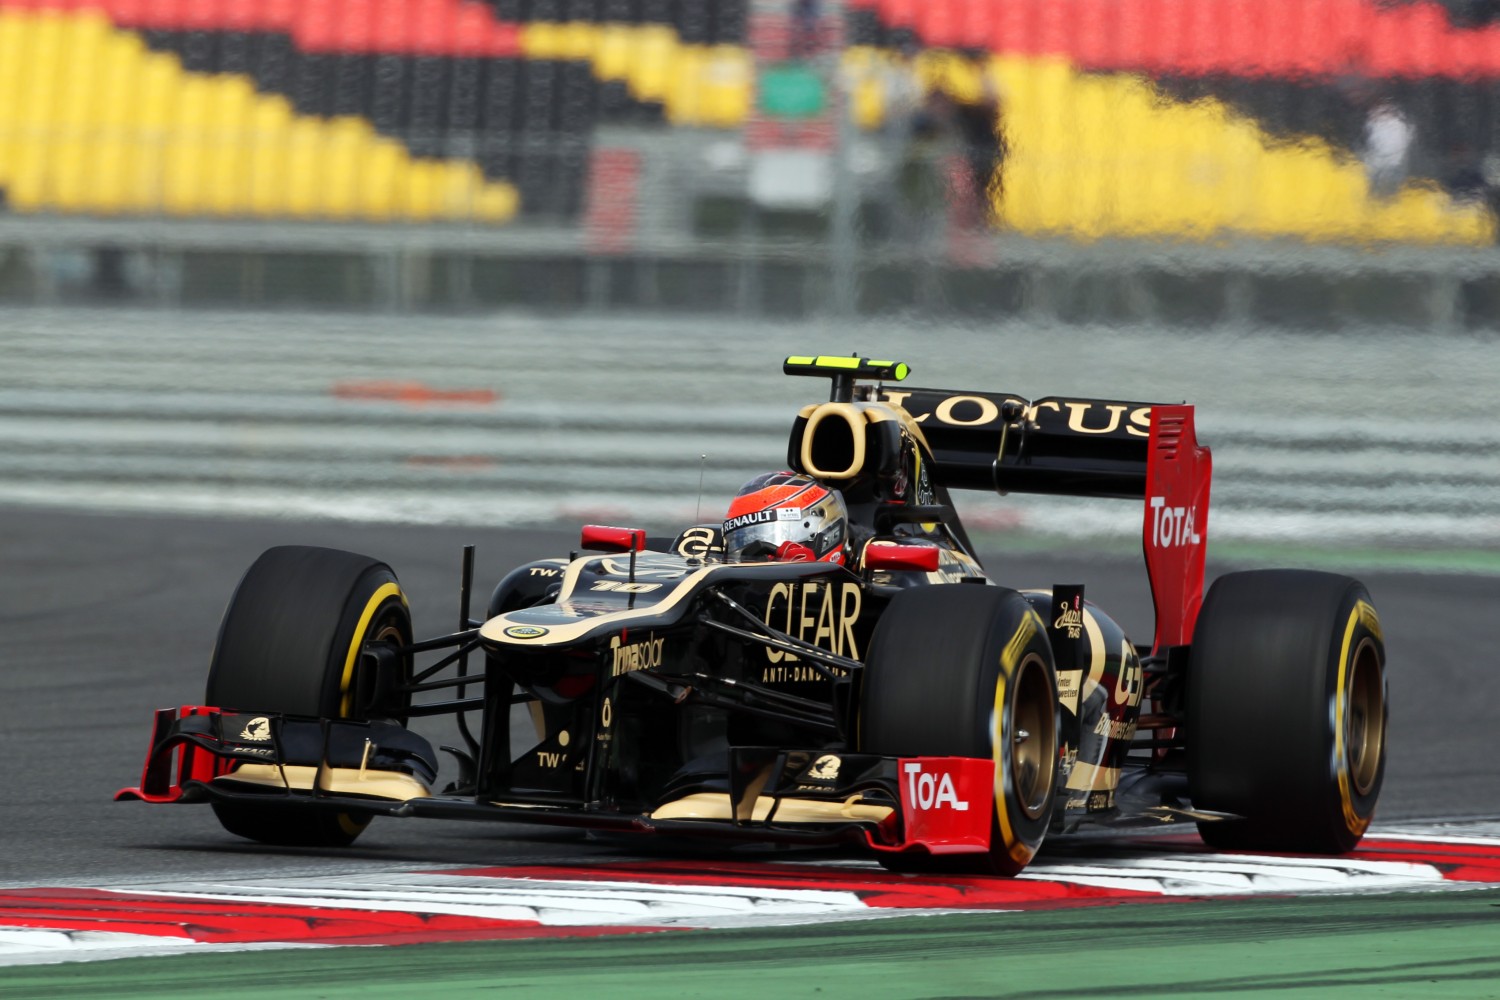 Grosjean vindt het maar een vreemde kwalificatie | Formule1.nl